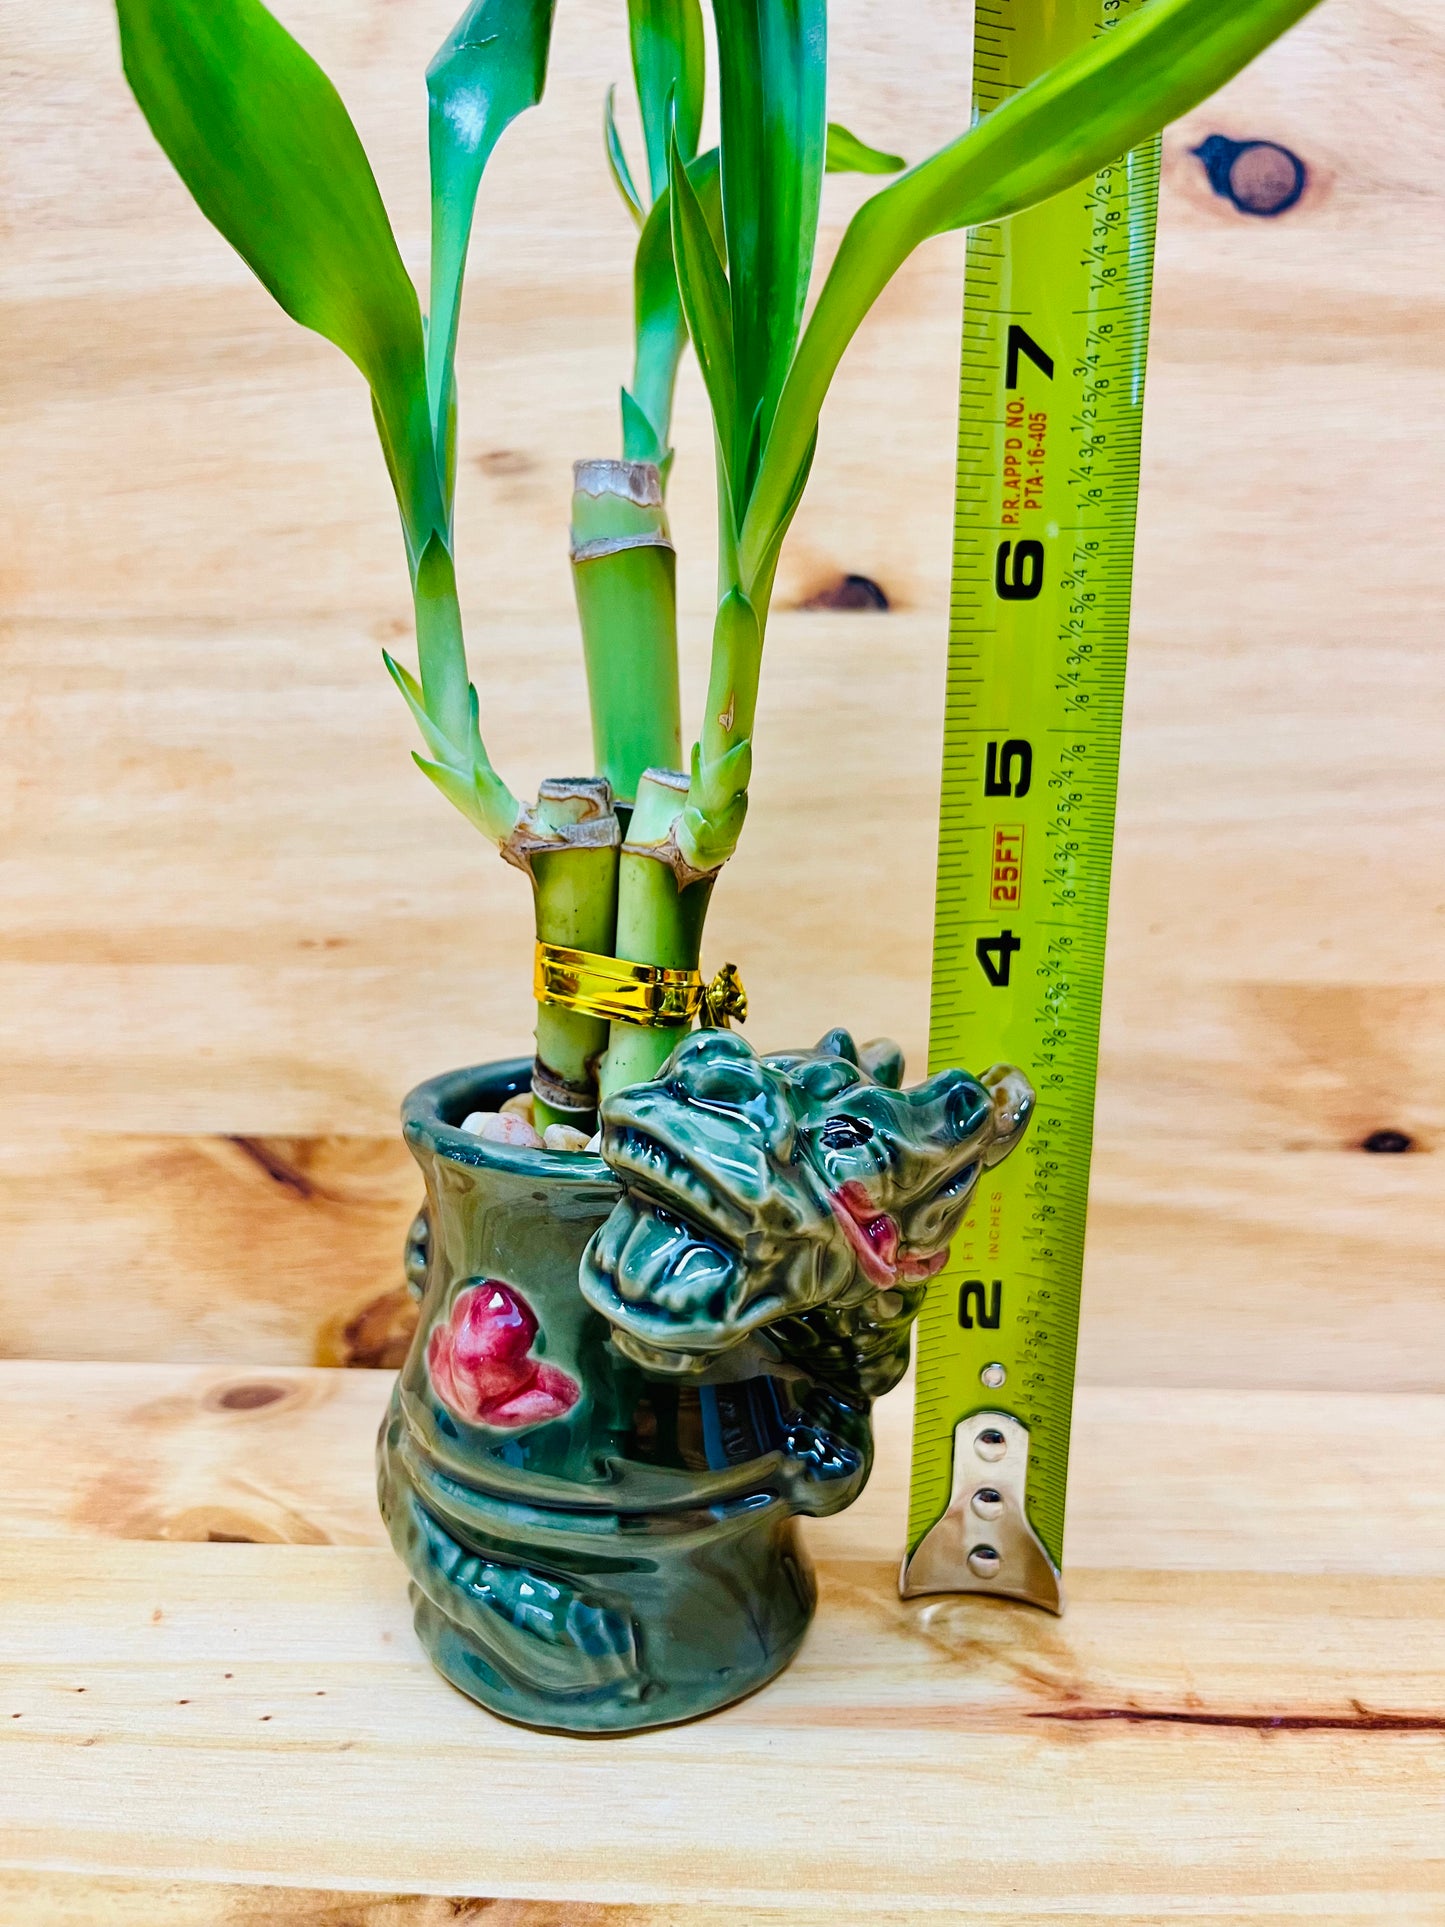 Jarrón de cerámica Live Lucky Bamboo 4”4”6” Año del Dragón